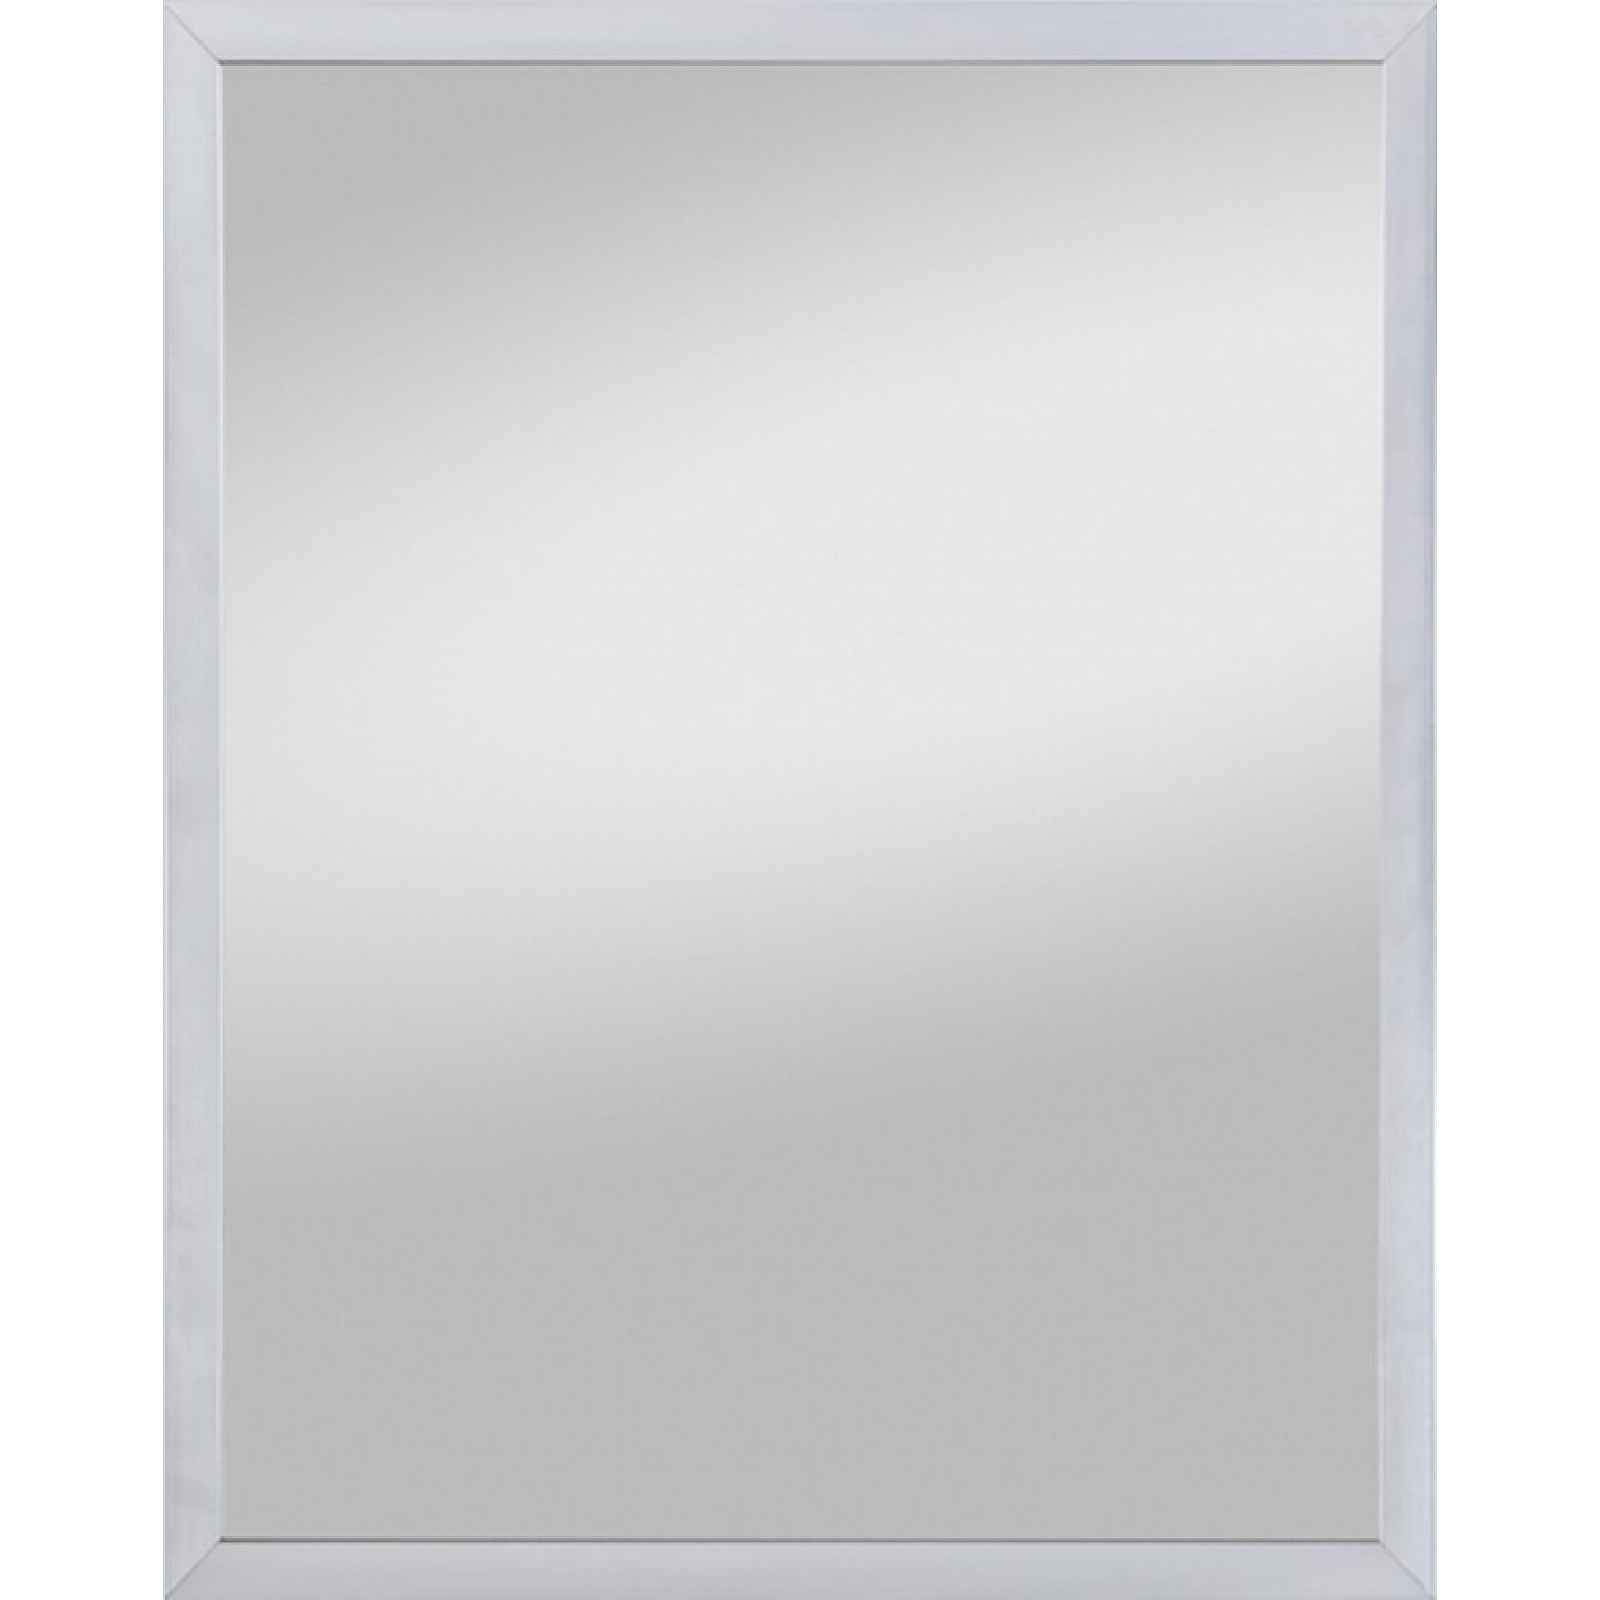 Nástěnné zrcadlo Bente 42x52 cm, nerezový vzhled